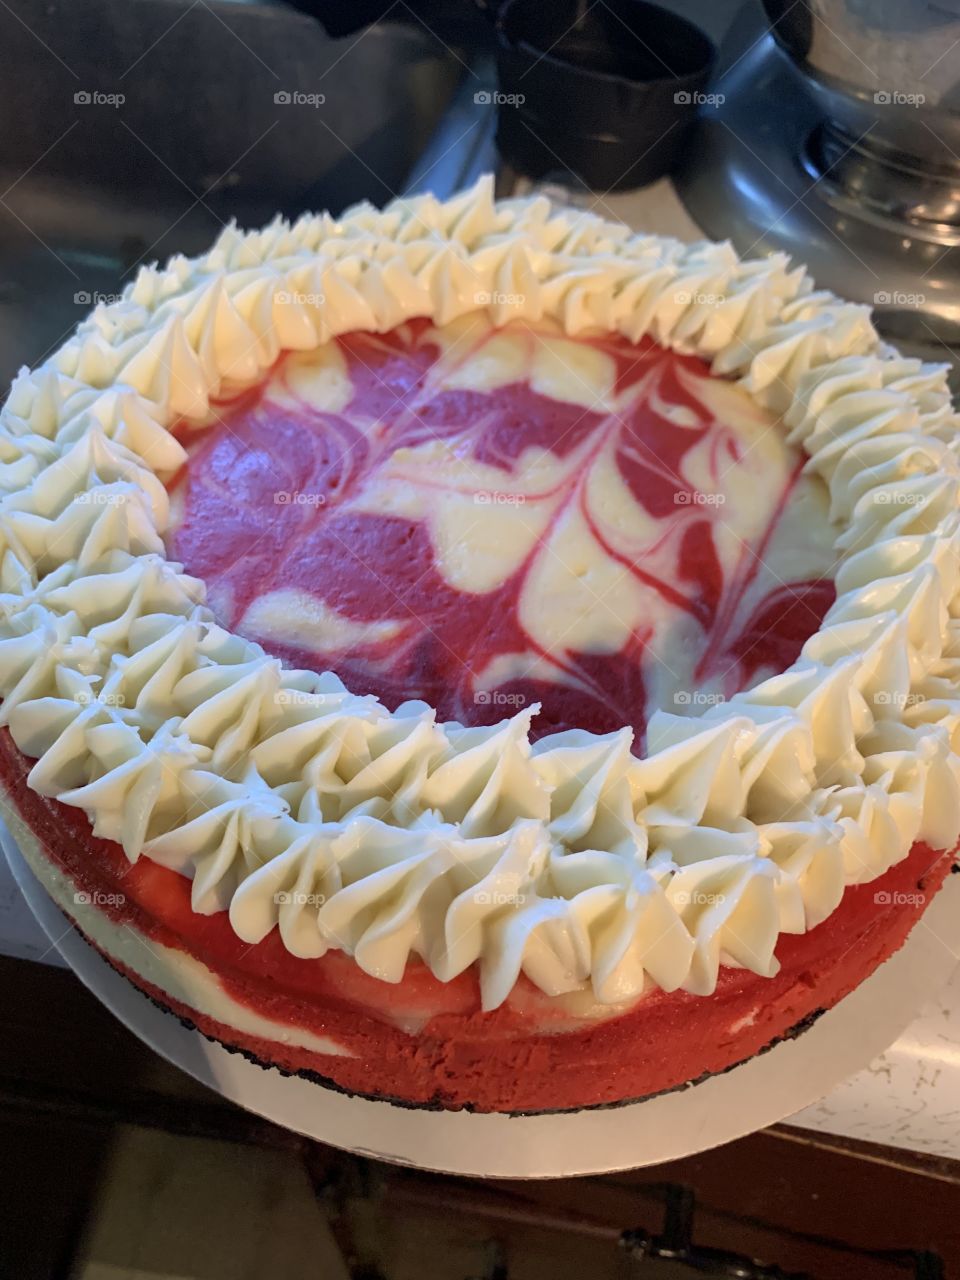 Red Velvet Cheesecake 